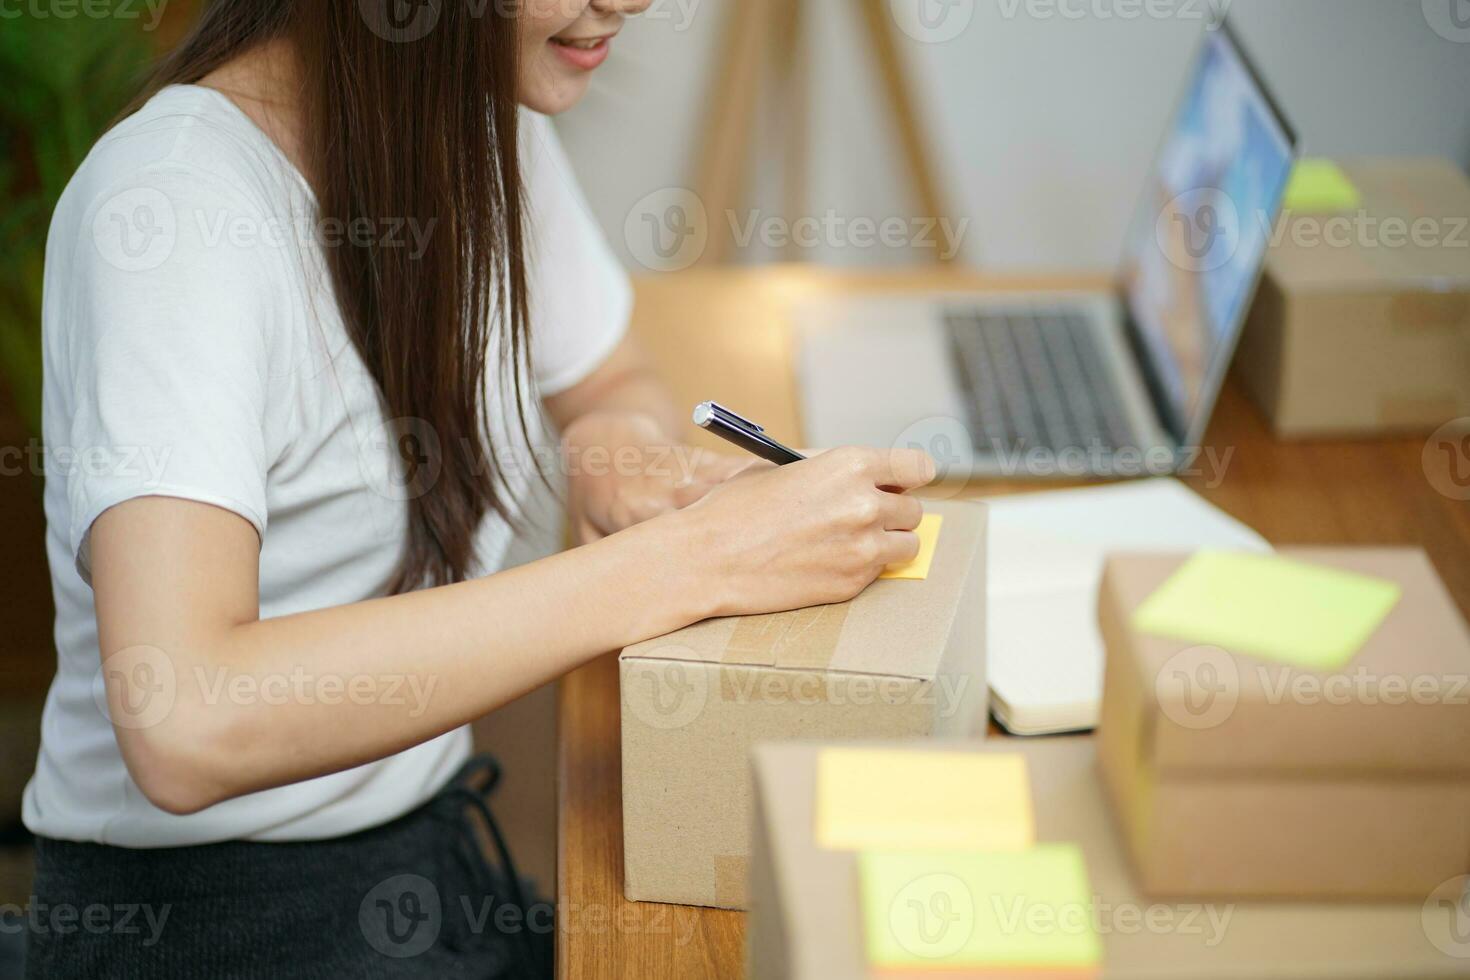 Aziatisch vrouw voorbereidingen treffen pakket levering doos Verzending voor boodschappen doen online levering mail onderhoud mensen en Verzending concept foto